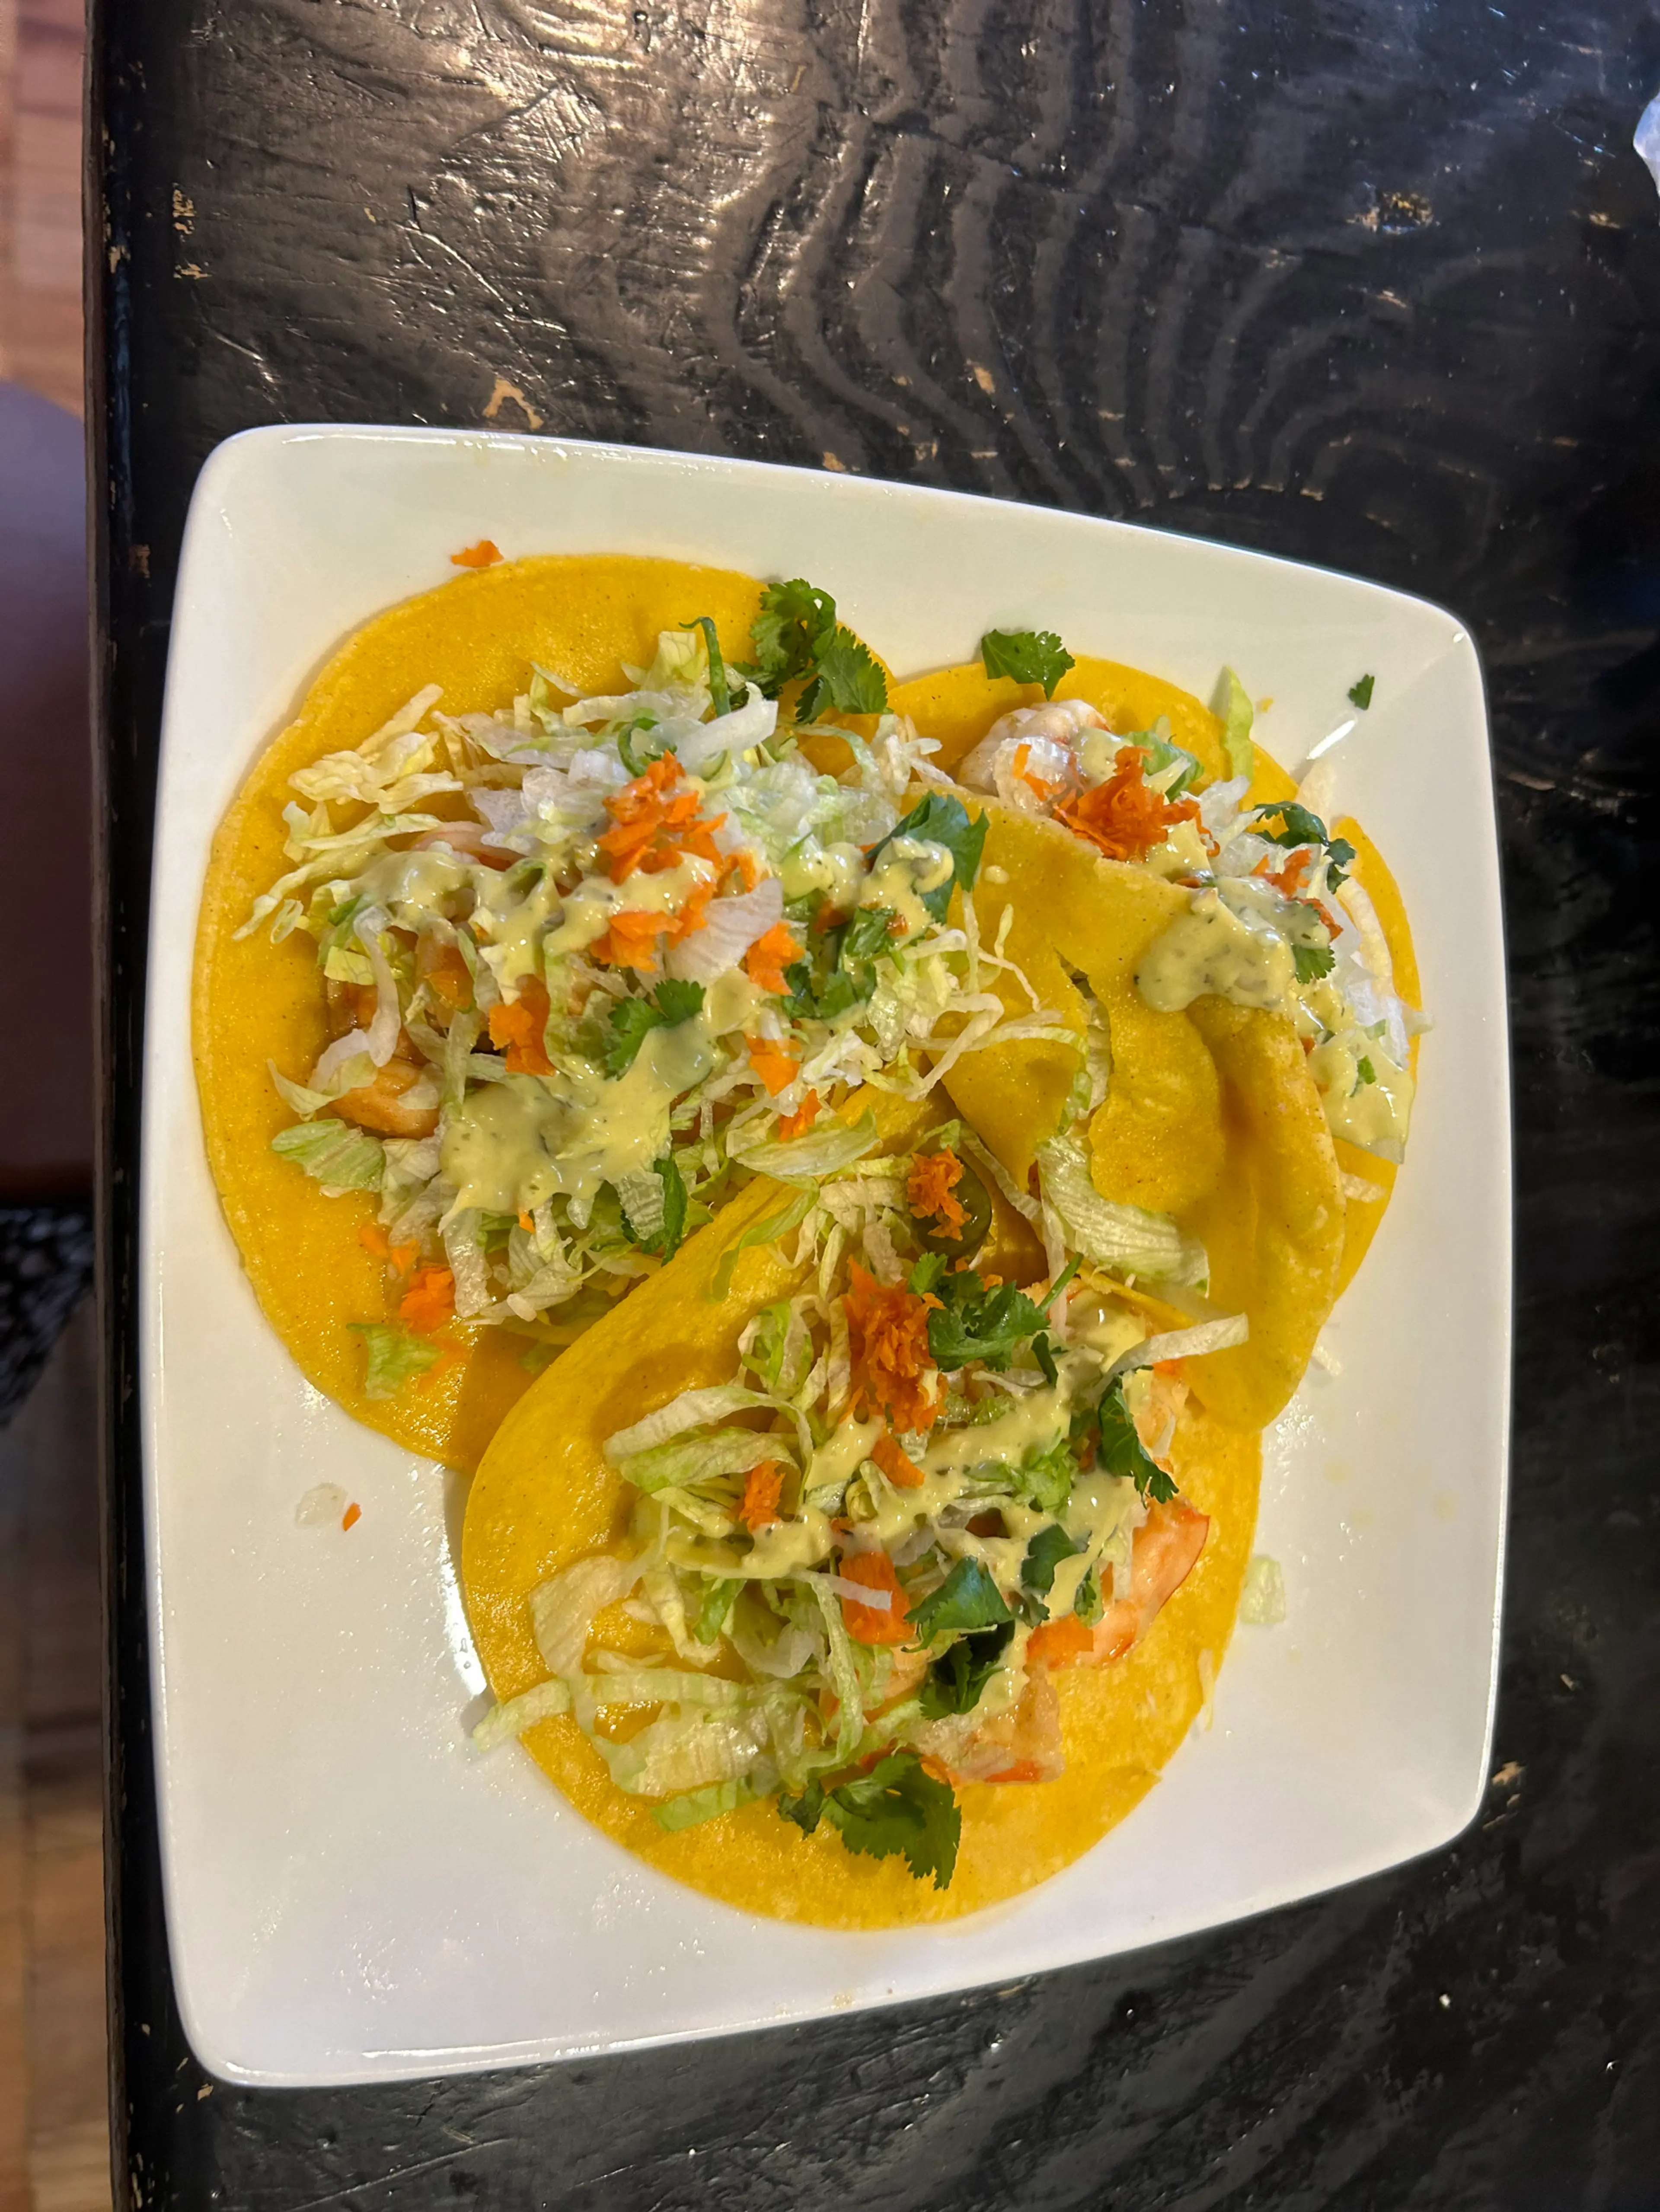 Cilantro Lime Shrimp Tacos